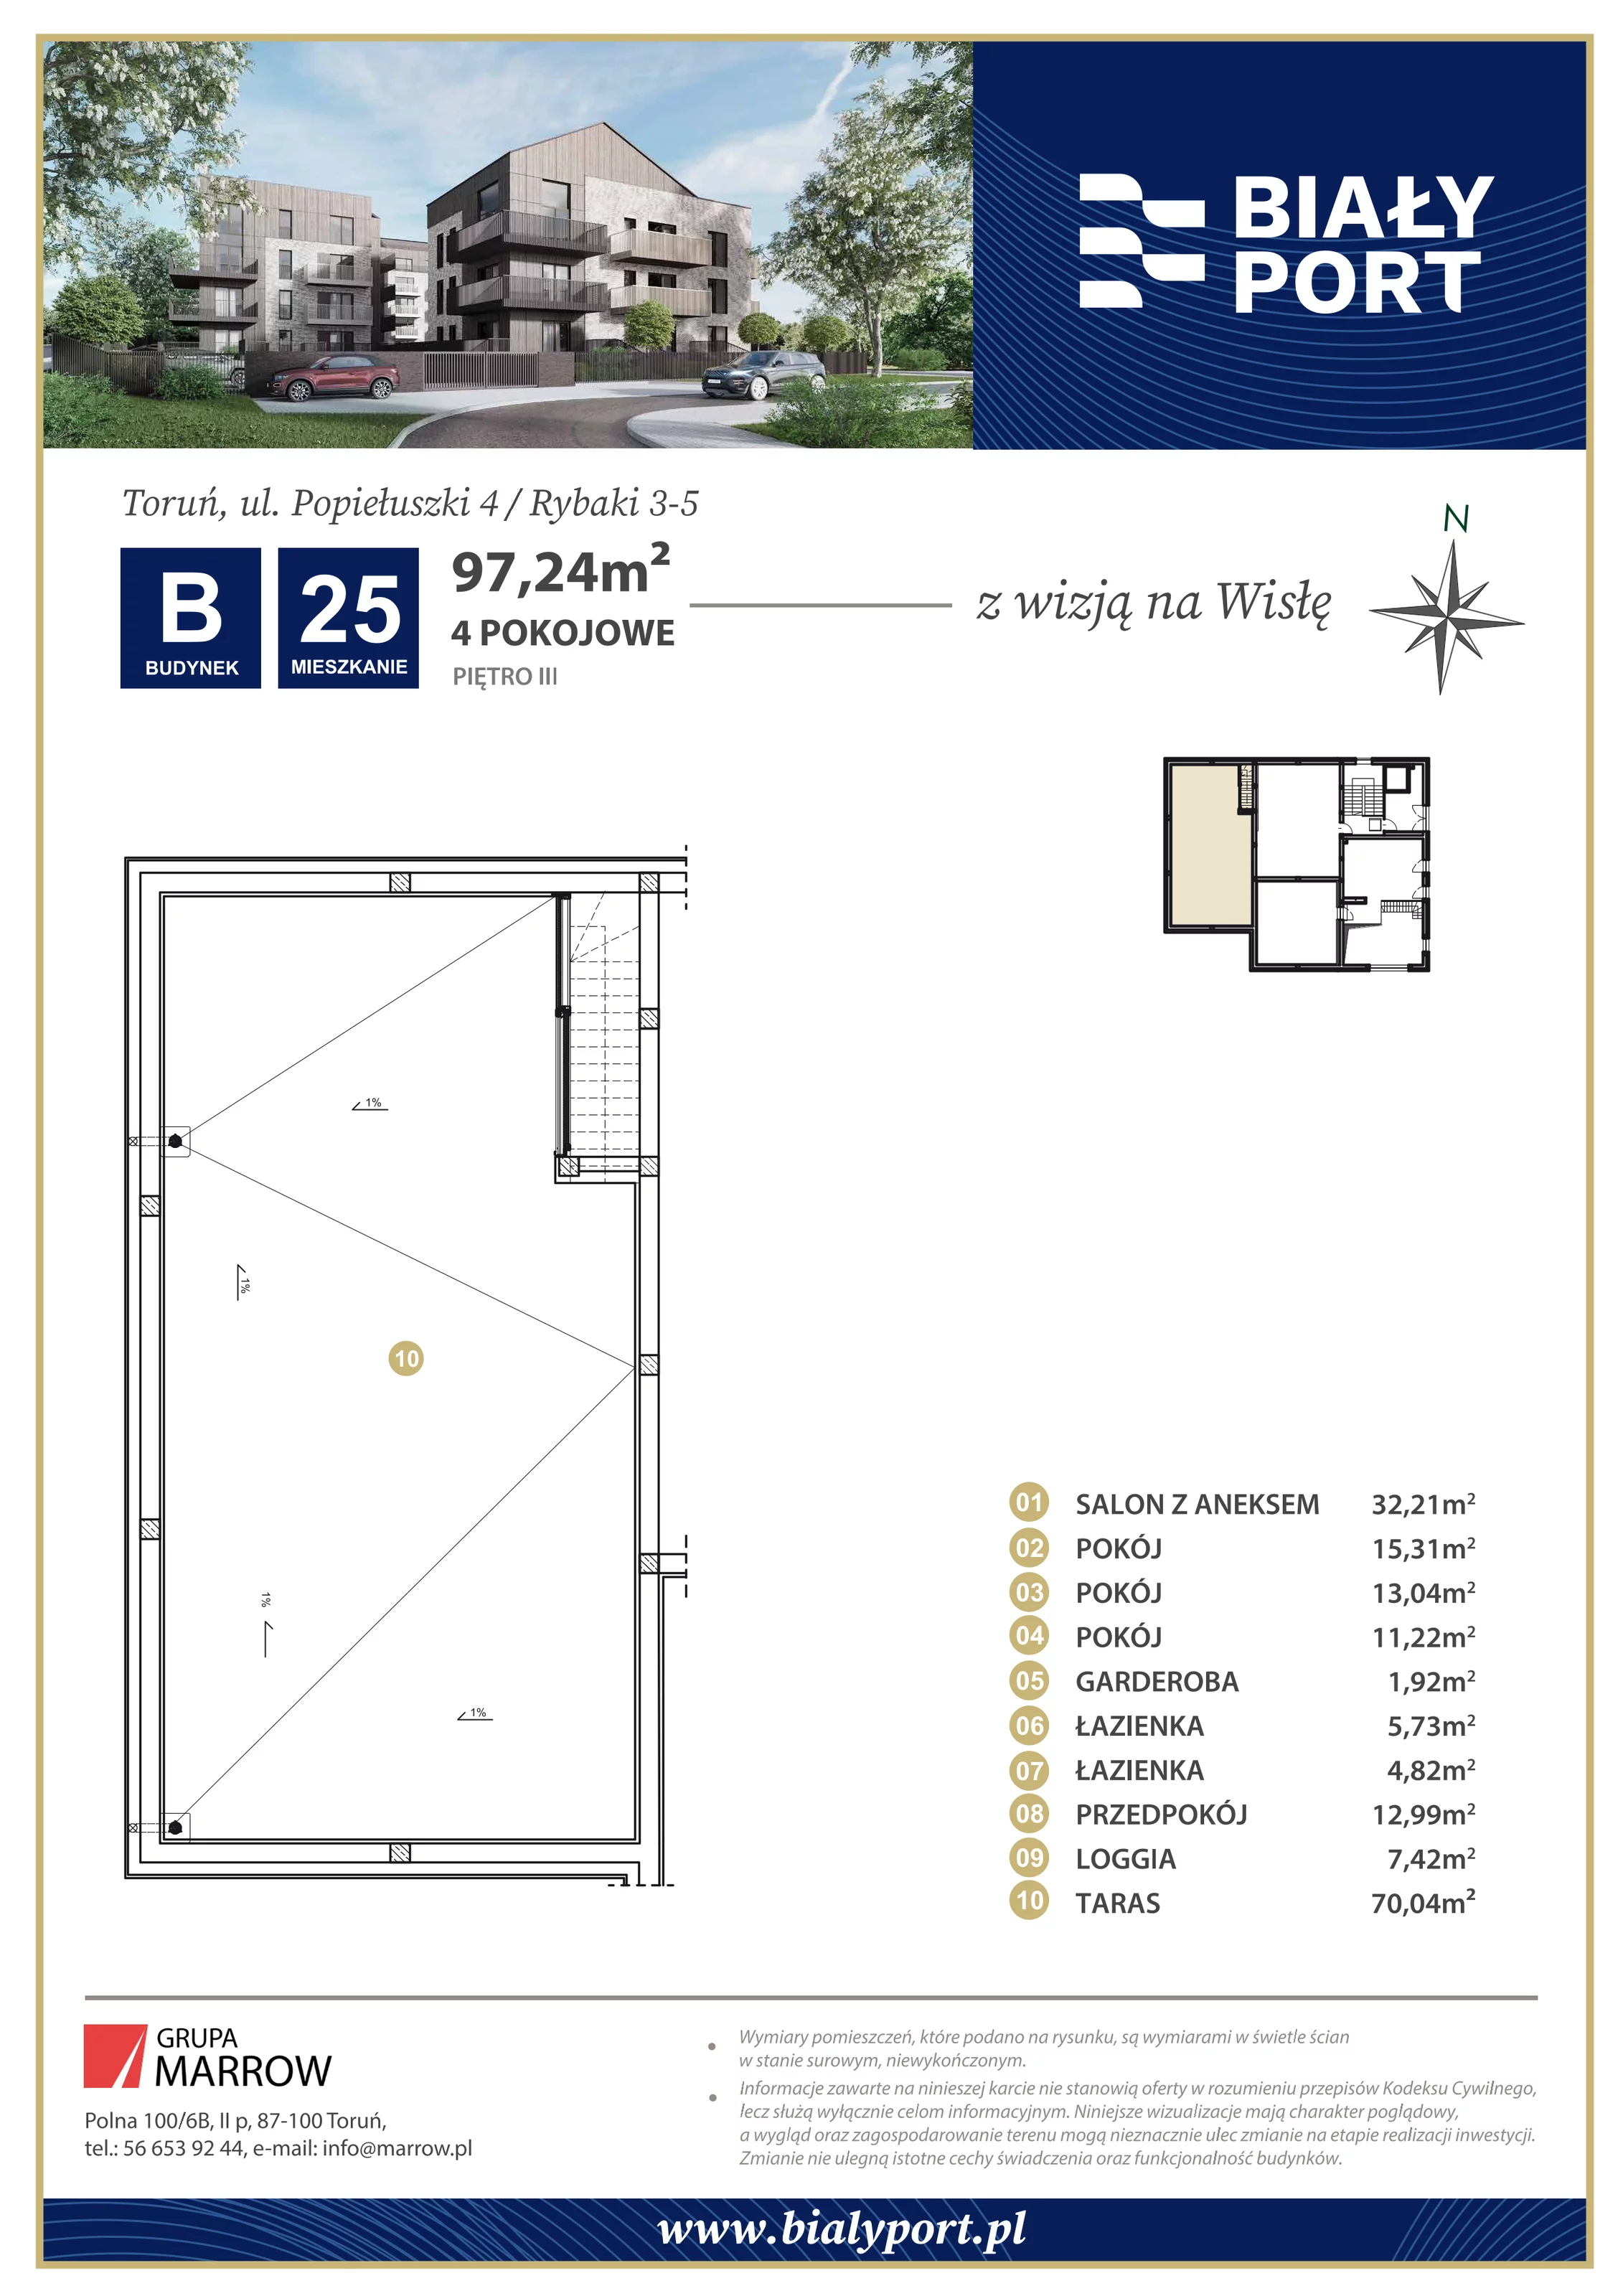 Mieszkanie 97,24 m², piętro 3, oferta nr 25, Biały Port, Toruń, Rybaki, ul. Popiełuszki 4